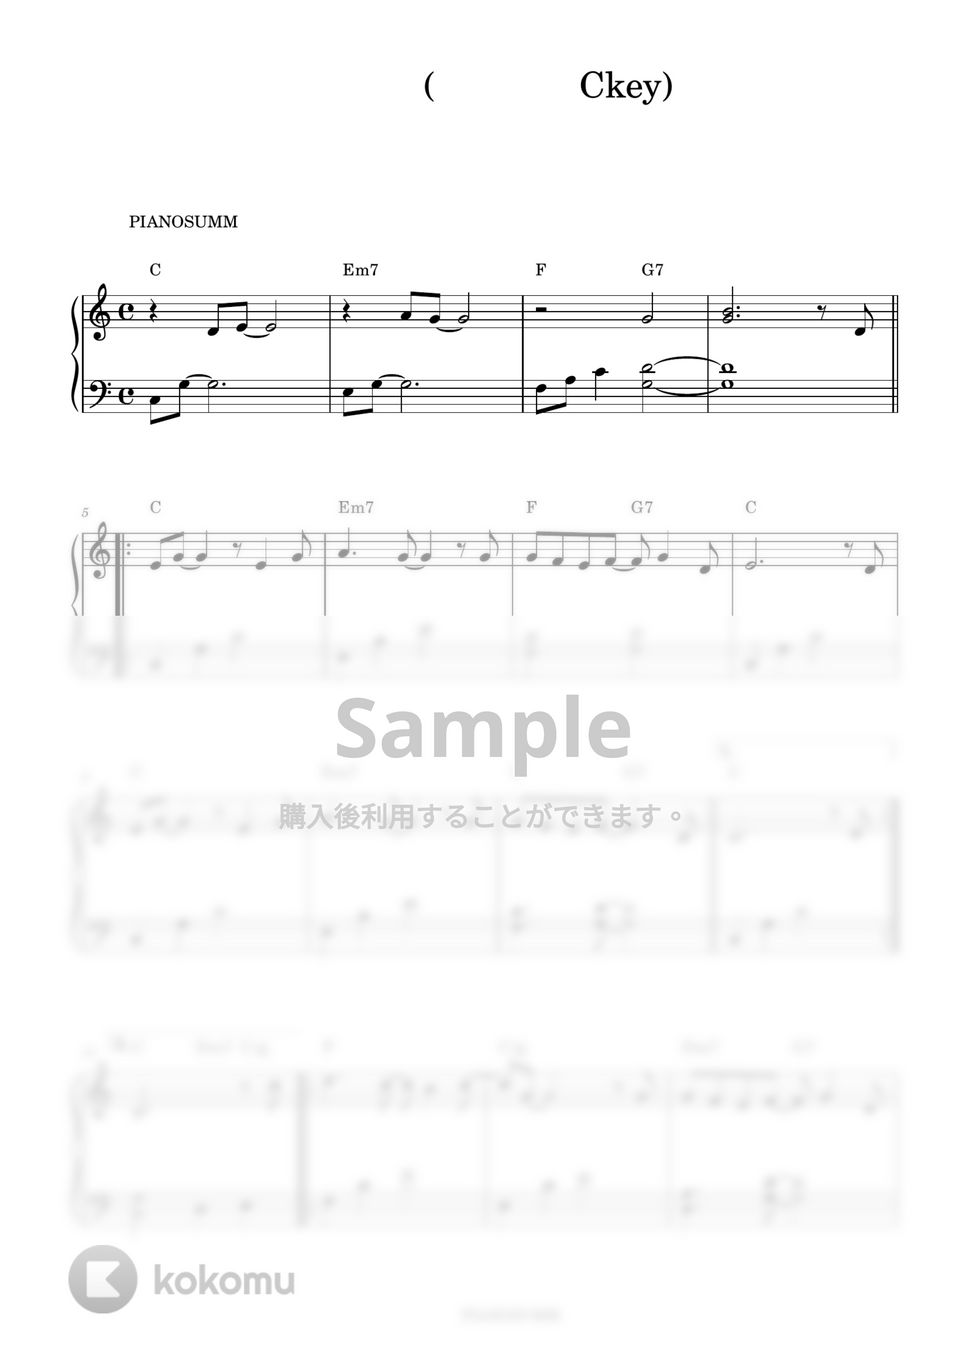 IU - Pieces Album (Easy ver.) (Includes Ckey) by PIANOSUMM